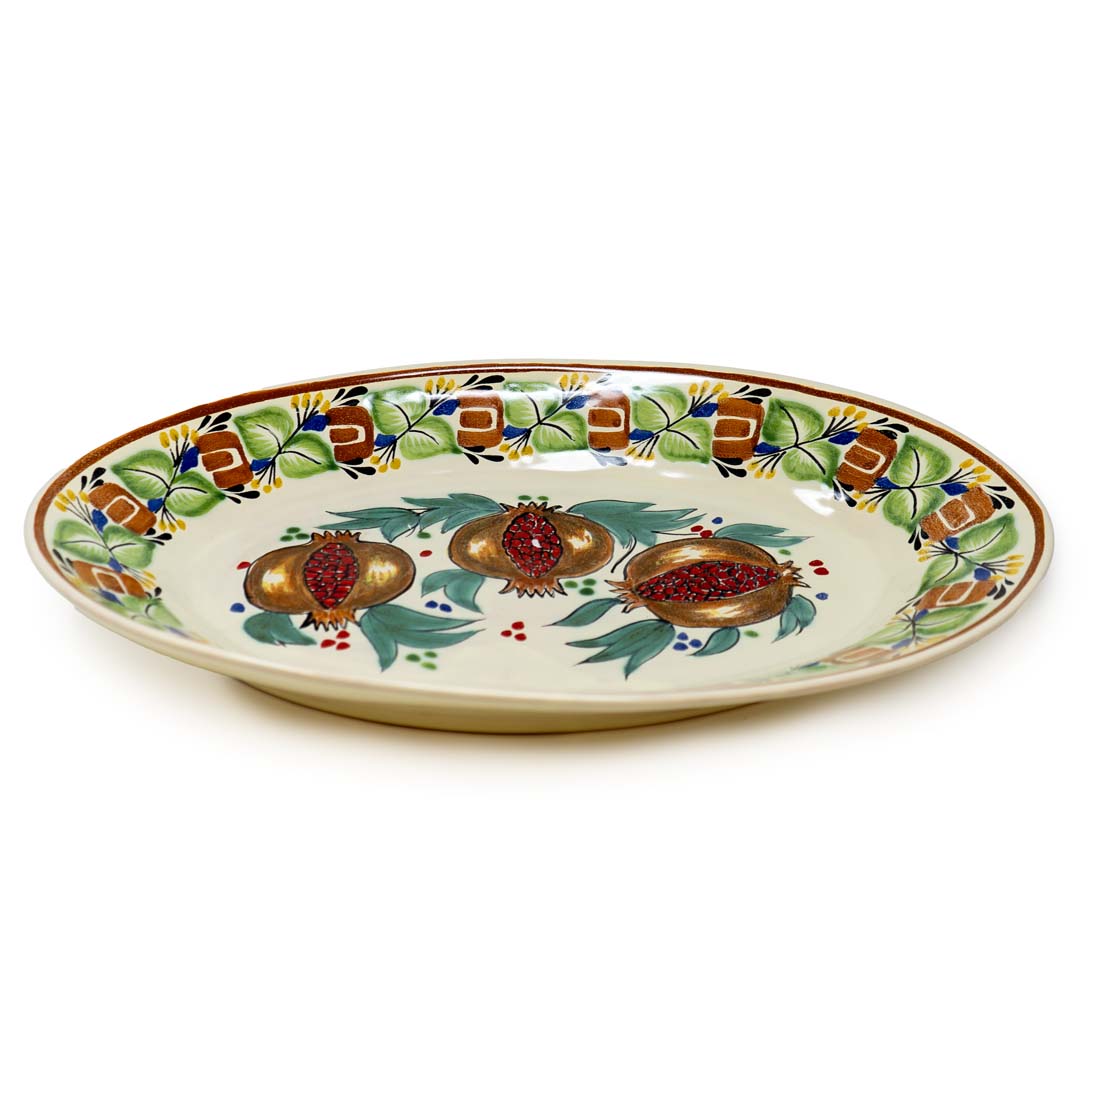 Oval Granada Ceramic Platter